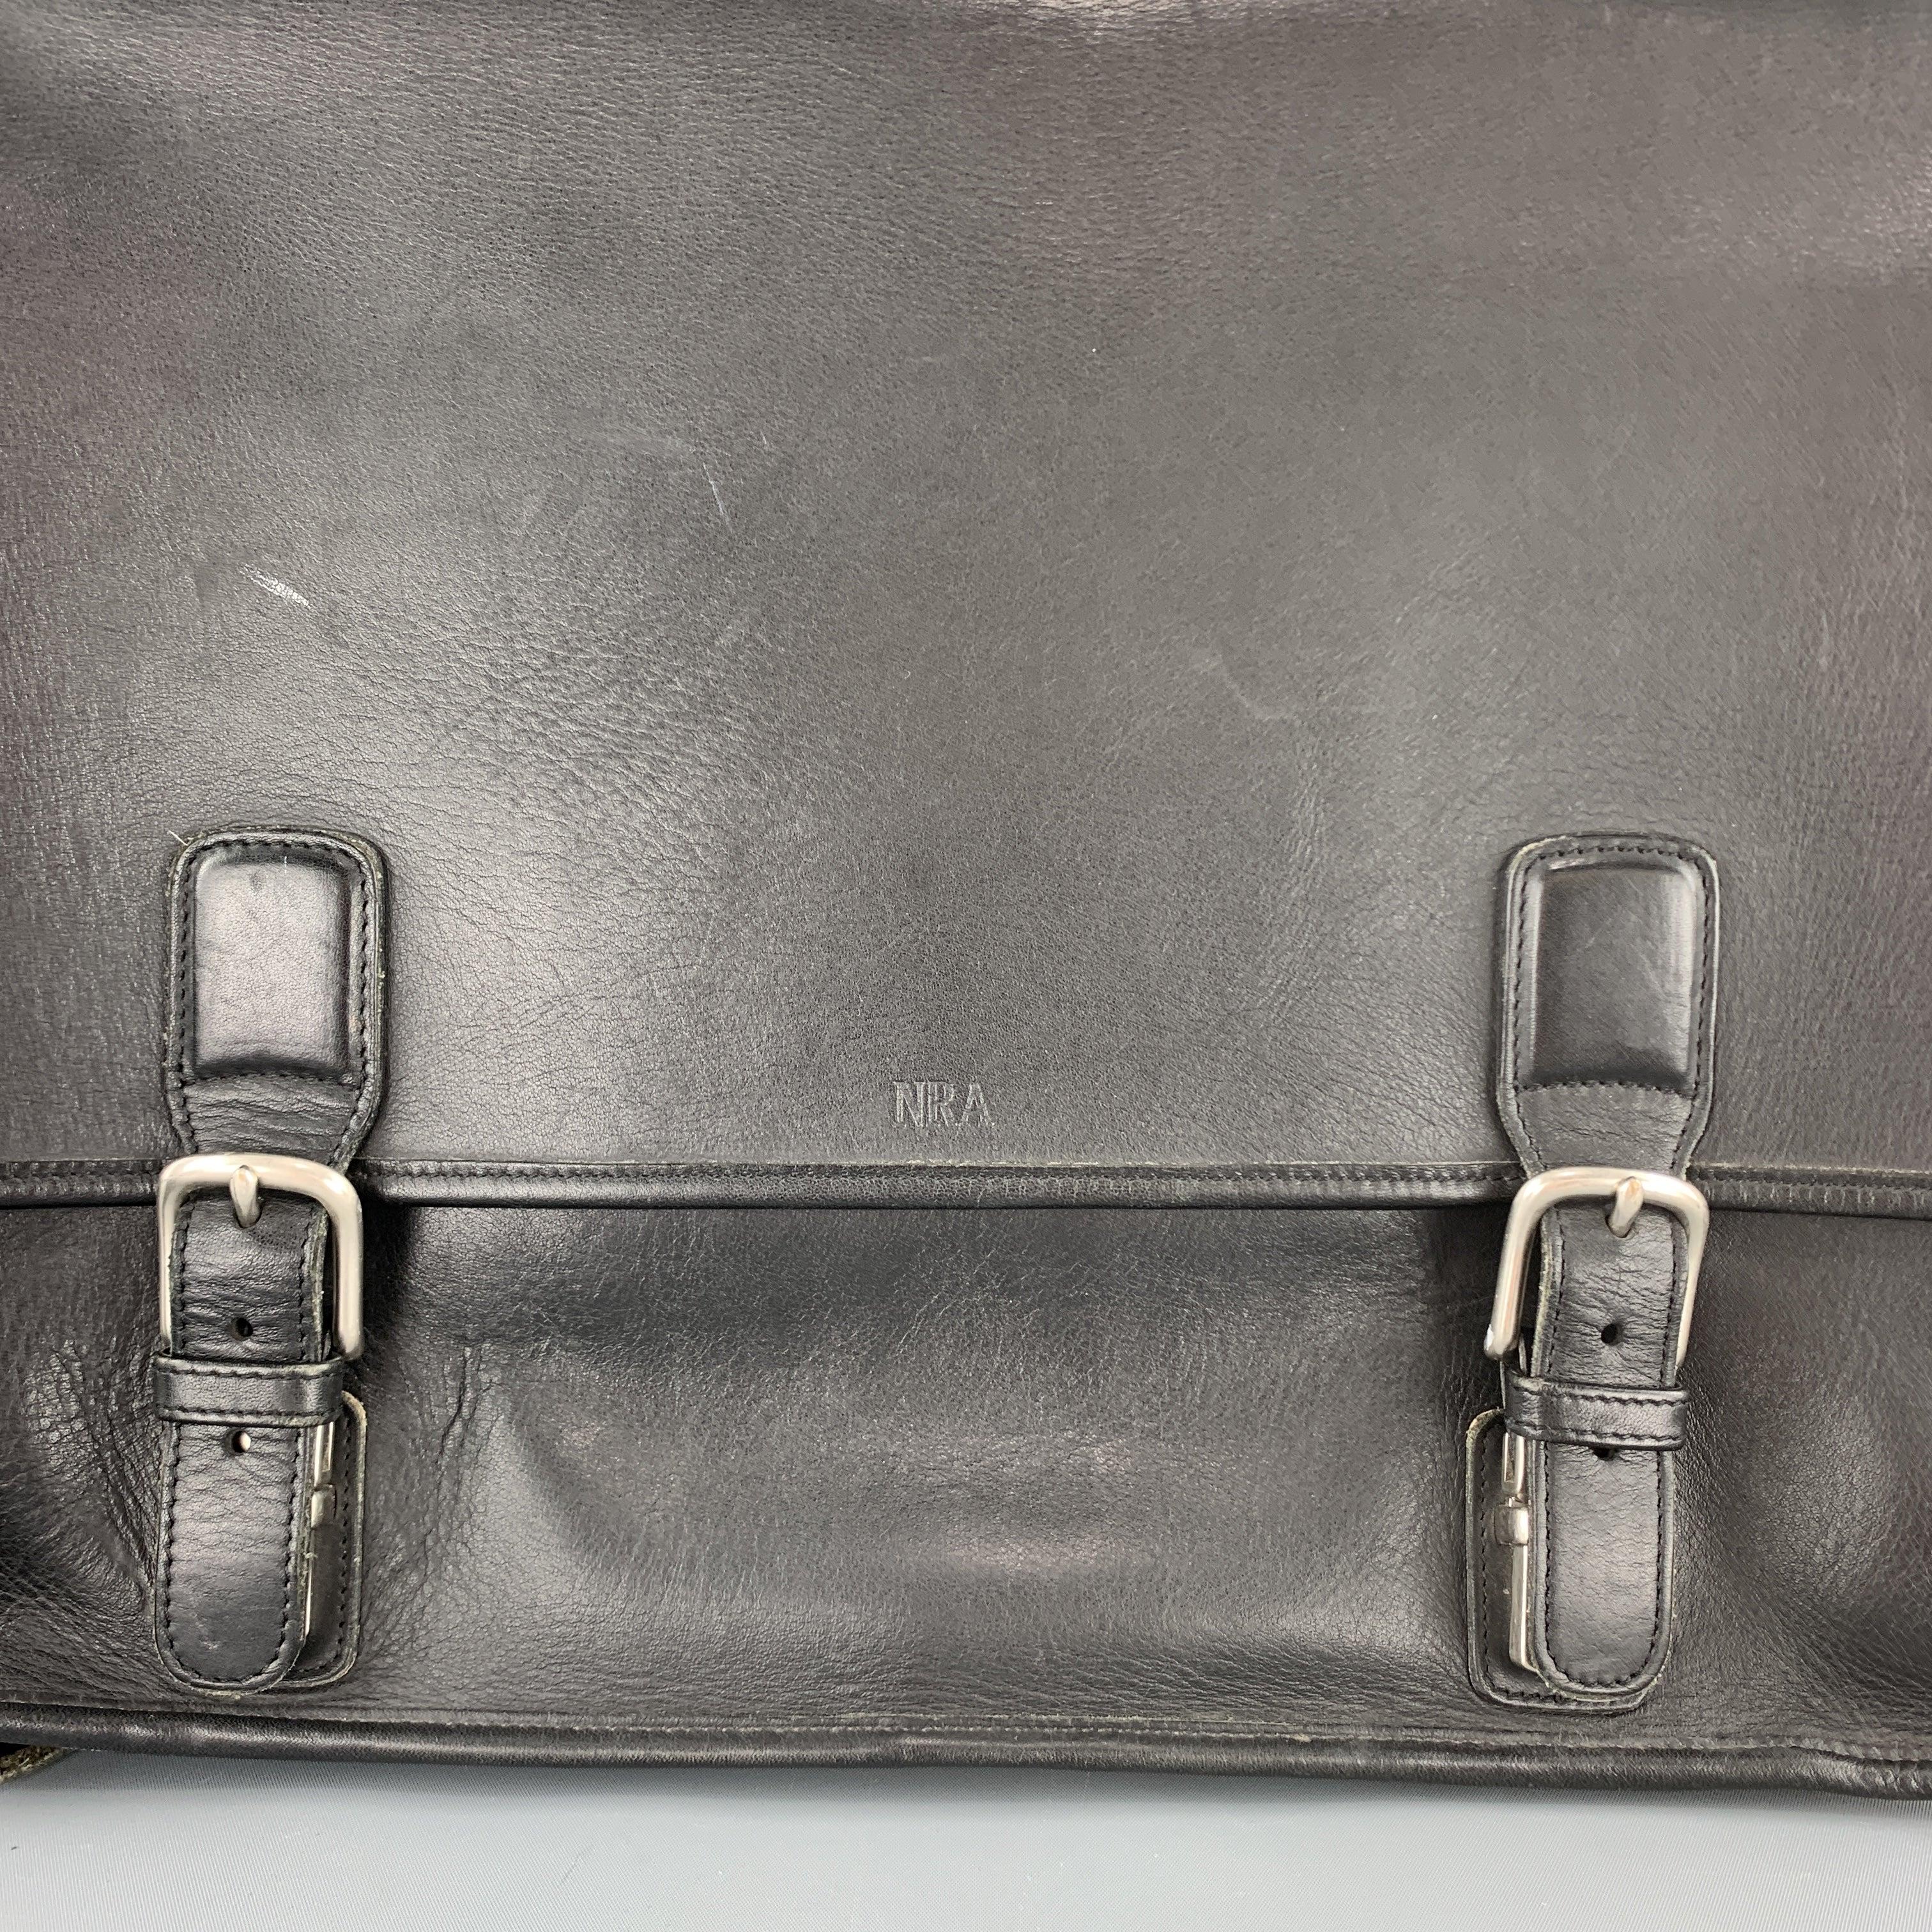 COACH Aktentasche aus schwarzem Leder mit Überschlag, doppeltem Druckknopfverschluss mit Schnallenimitat, Reißverschluss-Innenfächern mit abnehmbarem Laptop-Polster und Umhängeriemen. Monogramm 